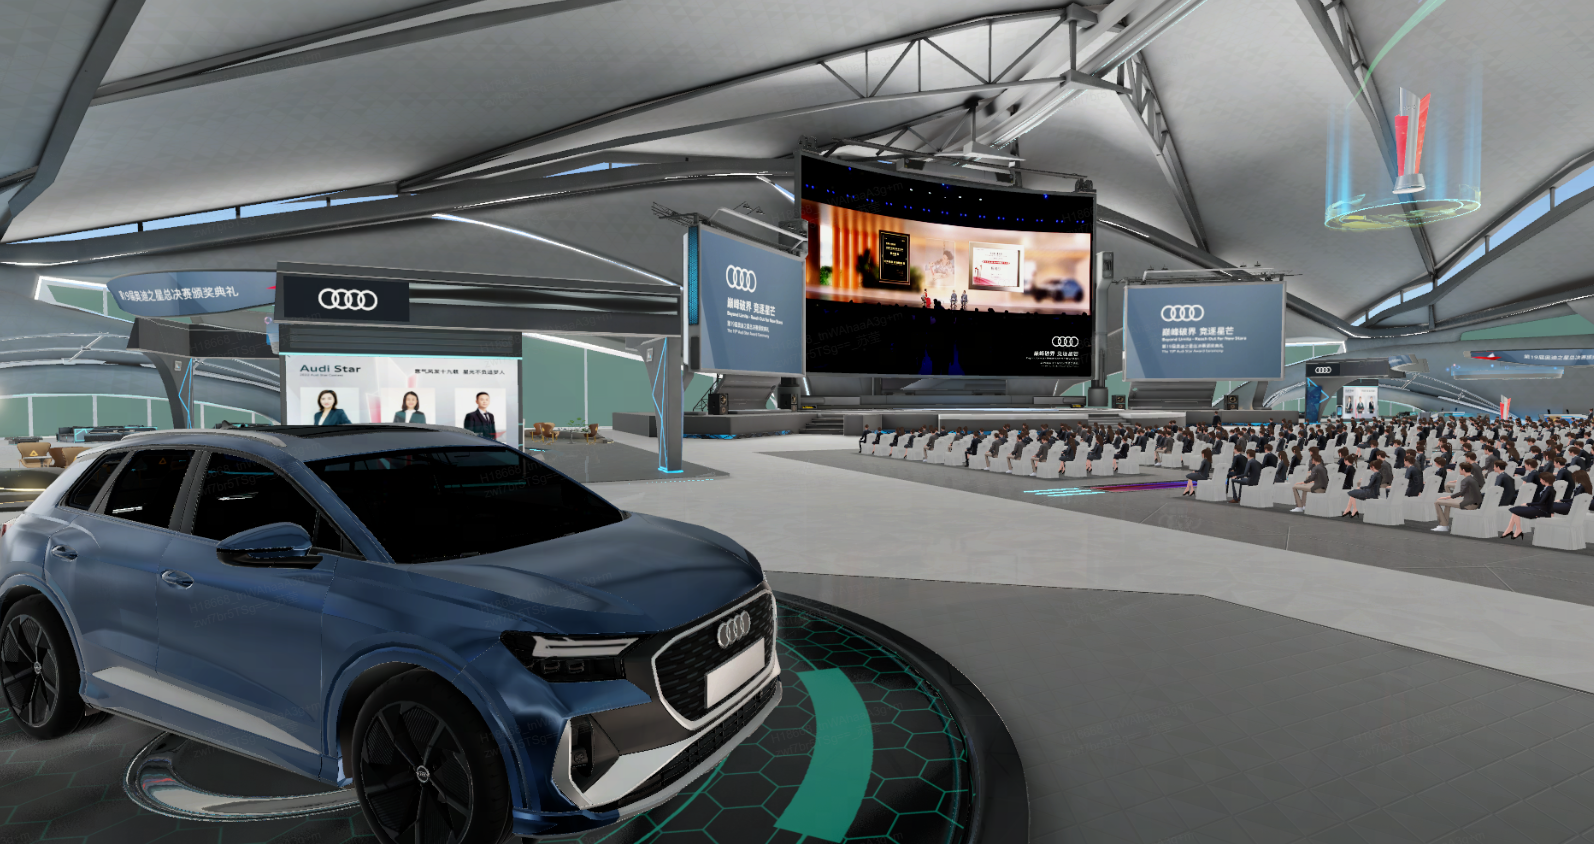 图片展示了一场室内活动，前方有一辆蓝色奥迪汽车，背景是大屏幕及观众席，环境现代科技感强。